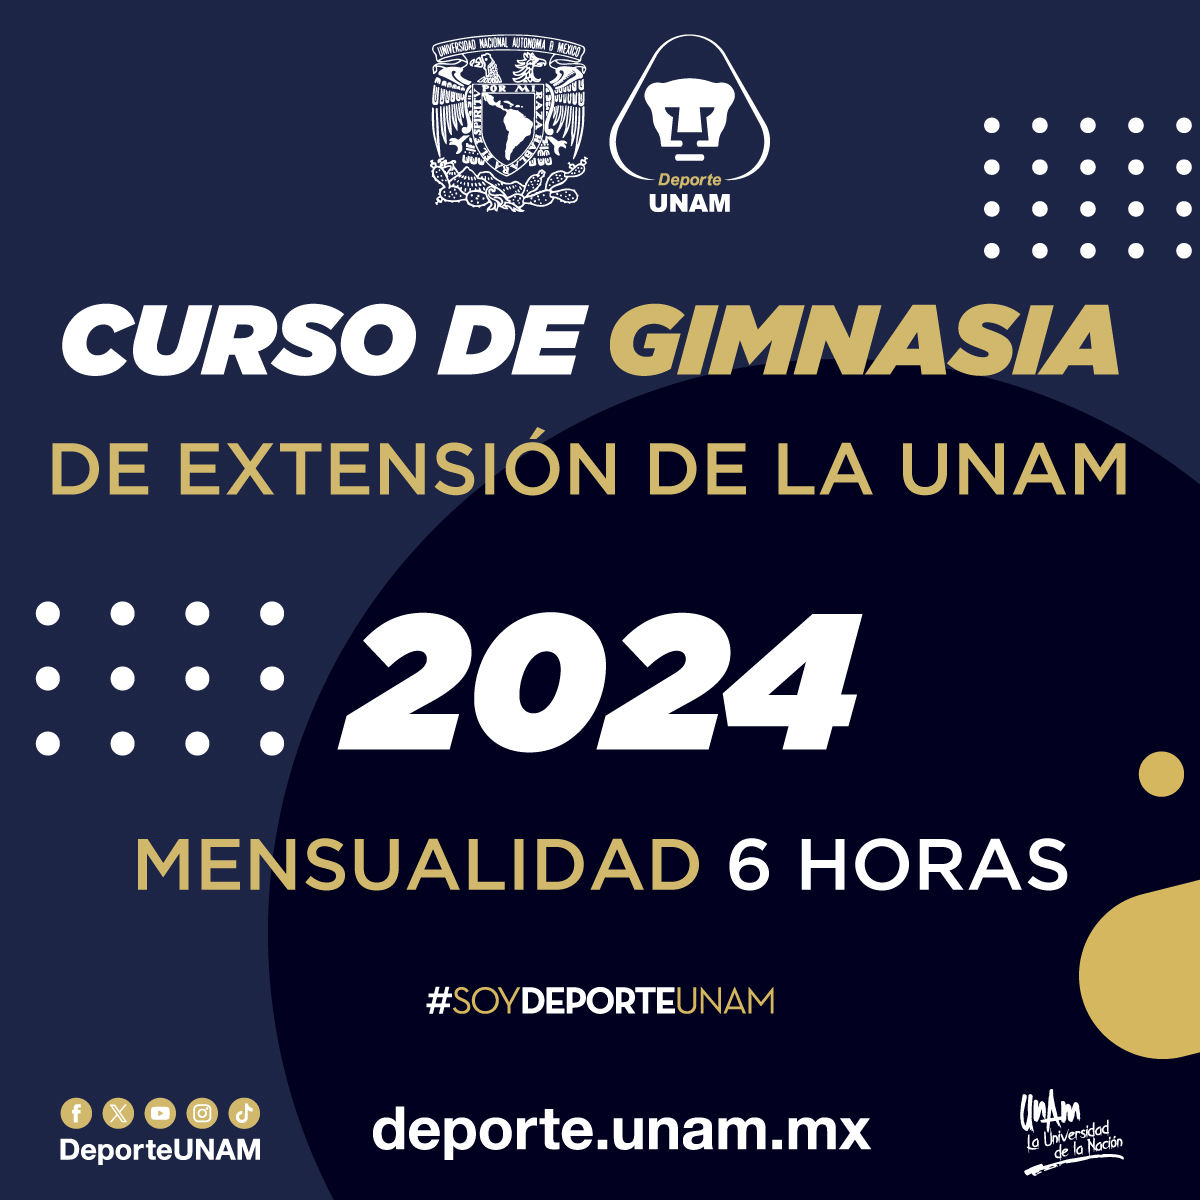 CURSO DE GIMNASIA DE EXTENSIÓN DE LA UNAM 2024 MENSUALIDAD 6 HORAS